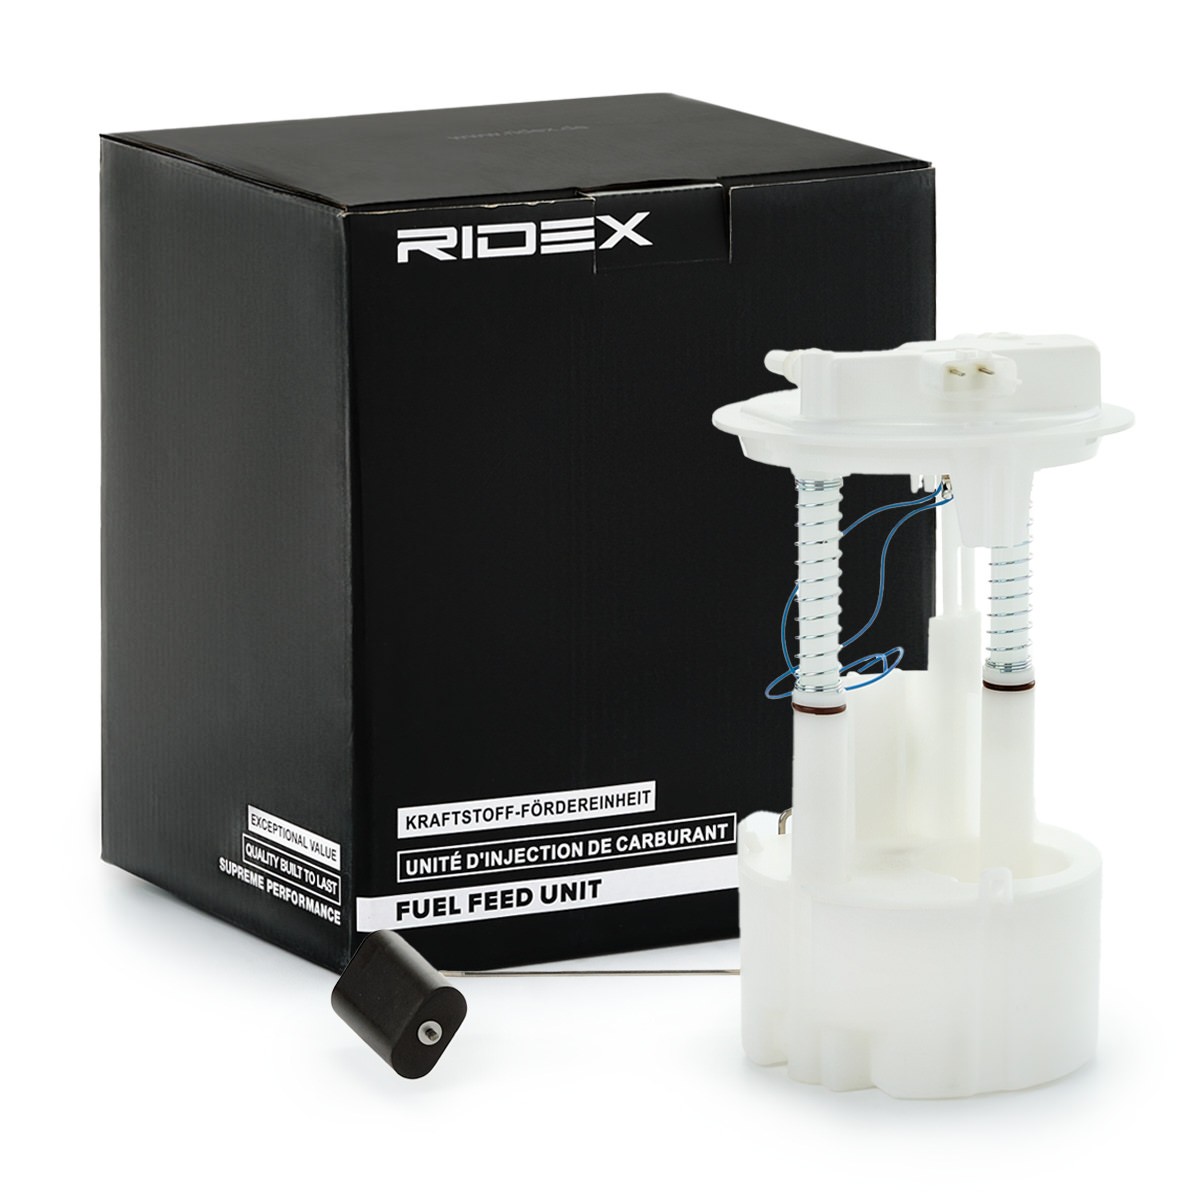 RIDEX 1382F0550 Fuel feed unit 170409U21B